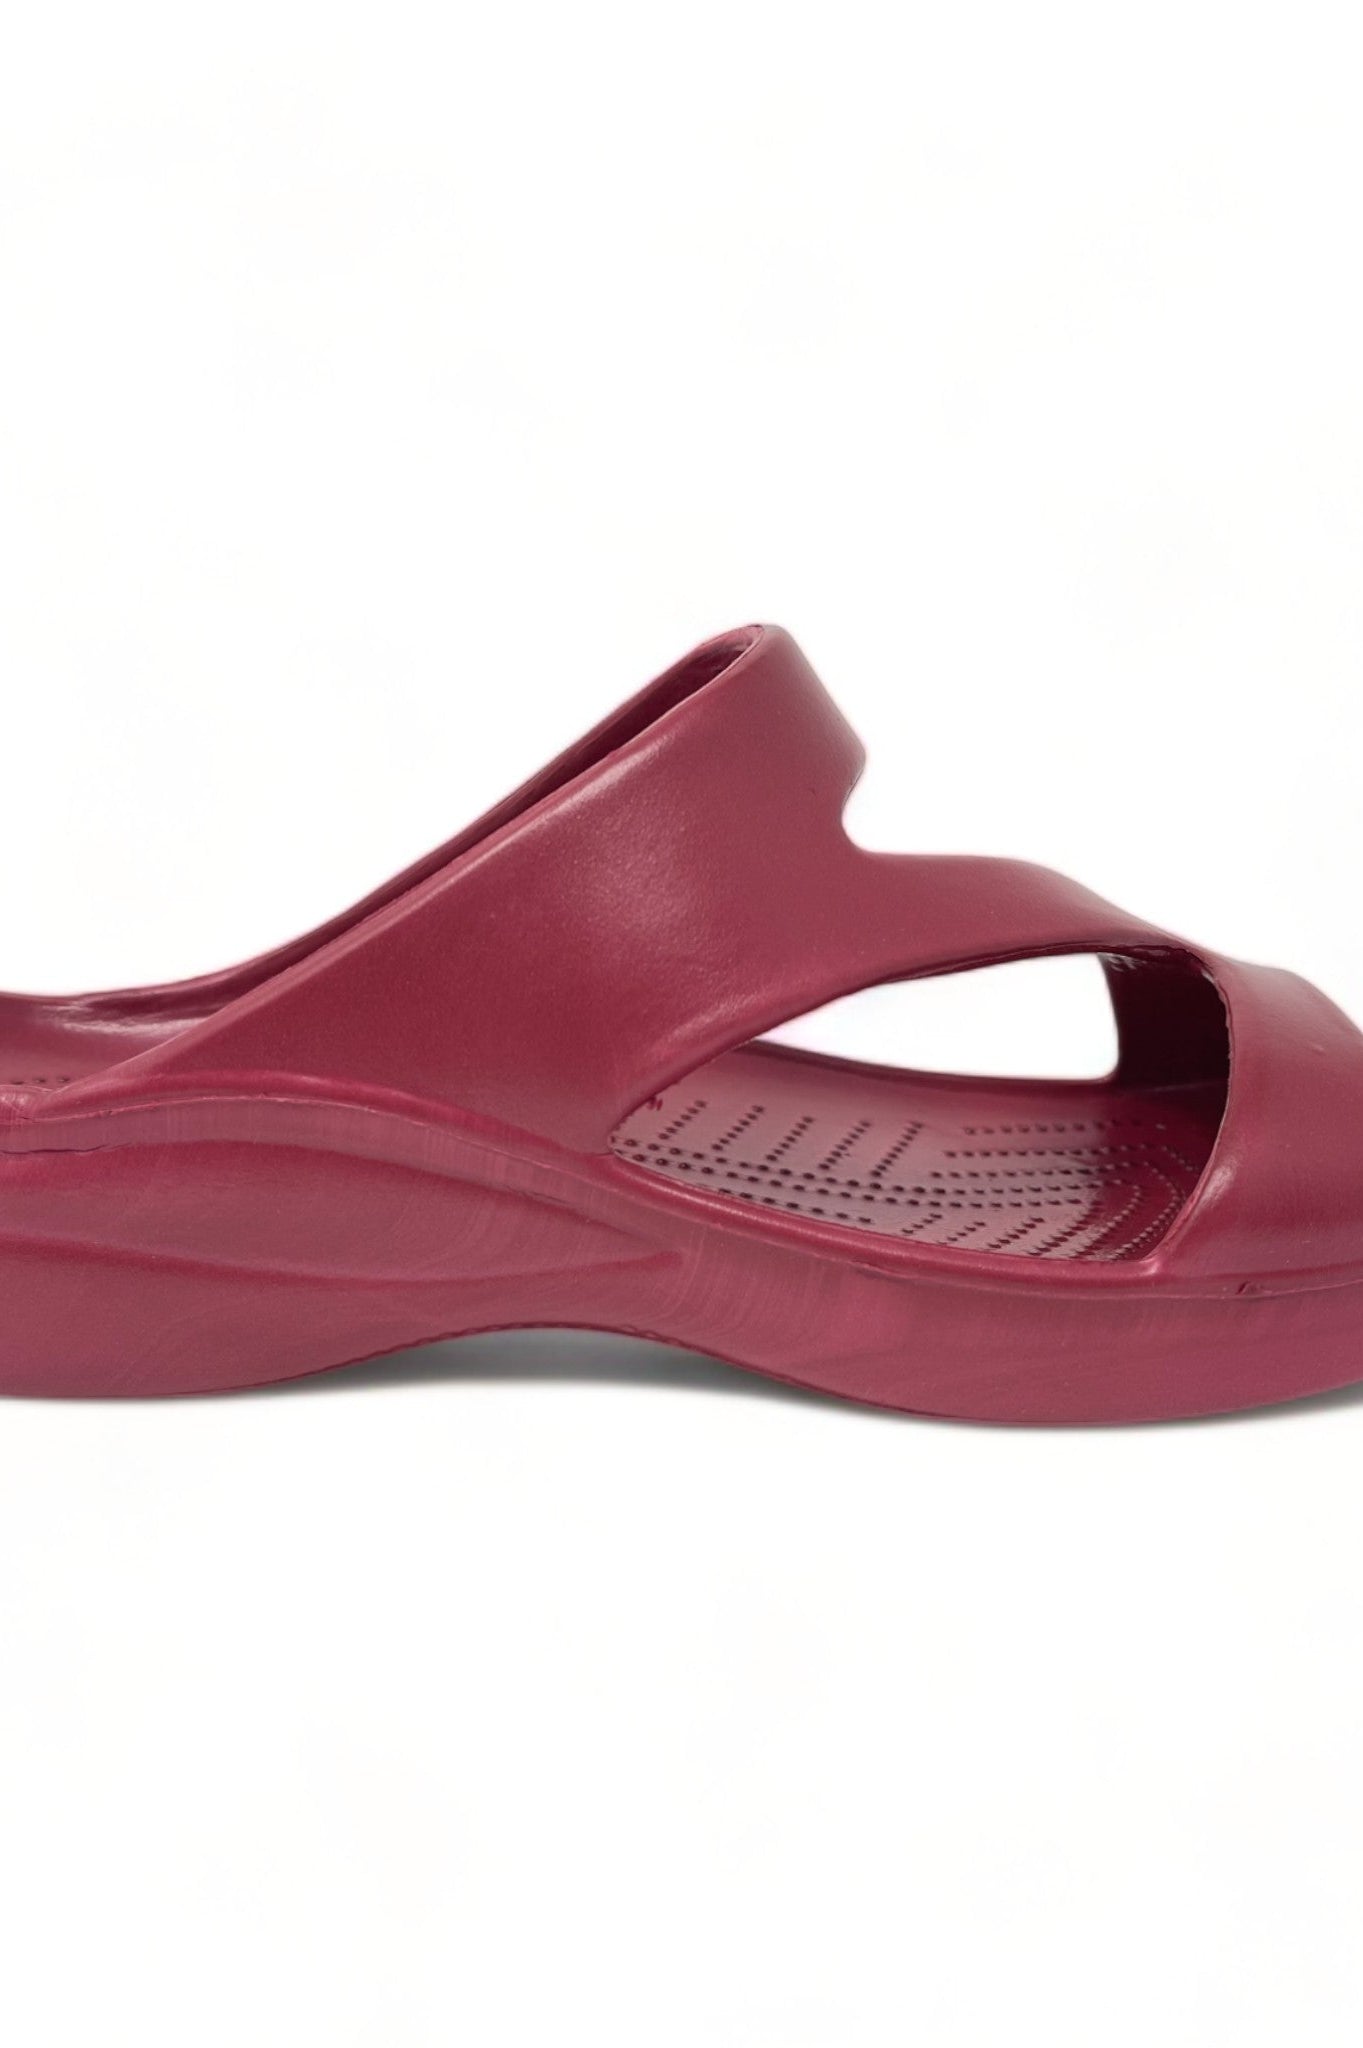 Women's Z Sandals - Burgundy DAWGS USA